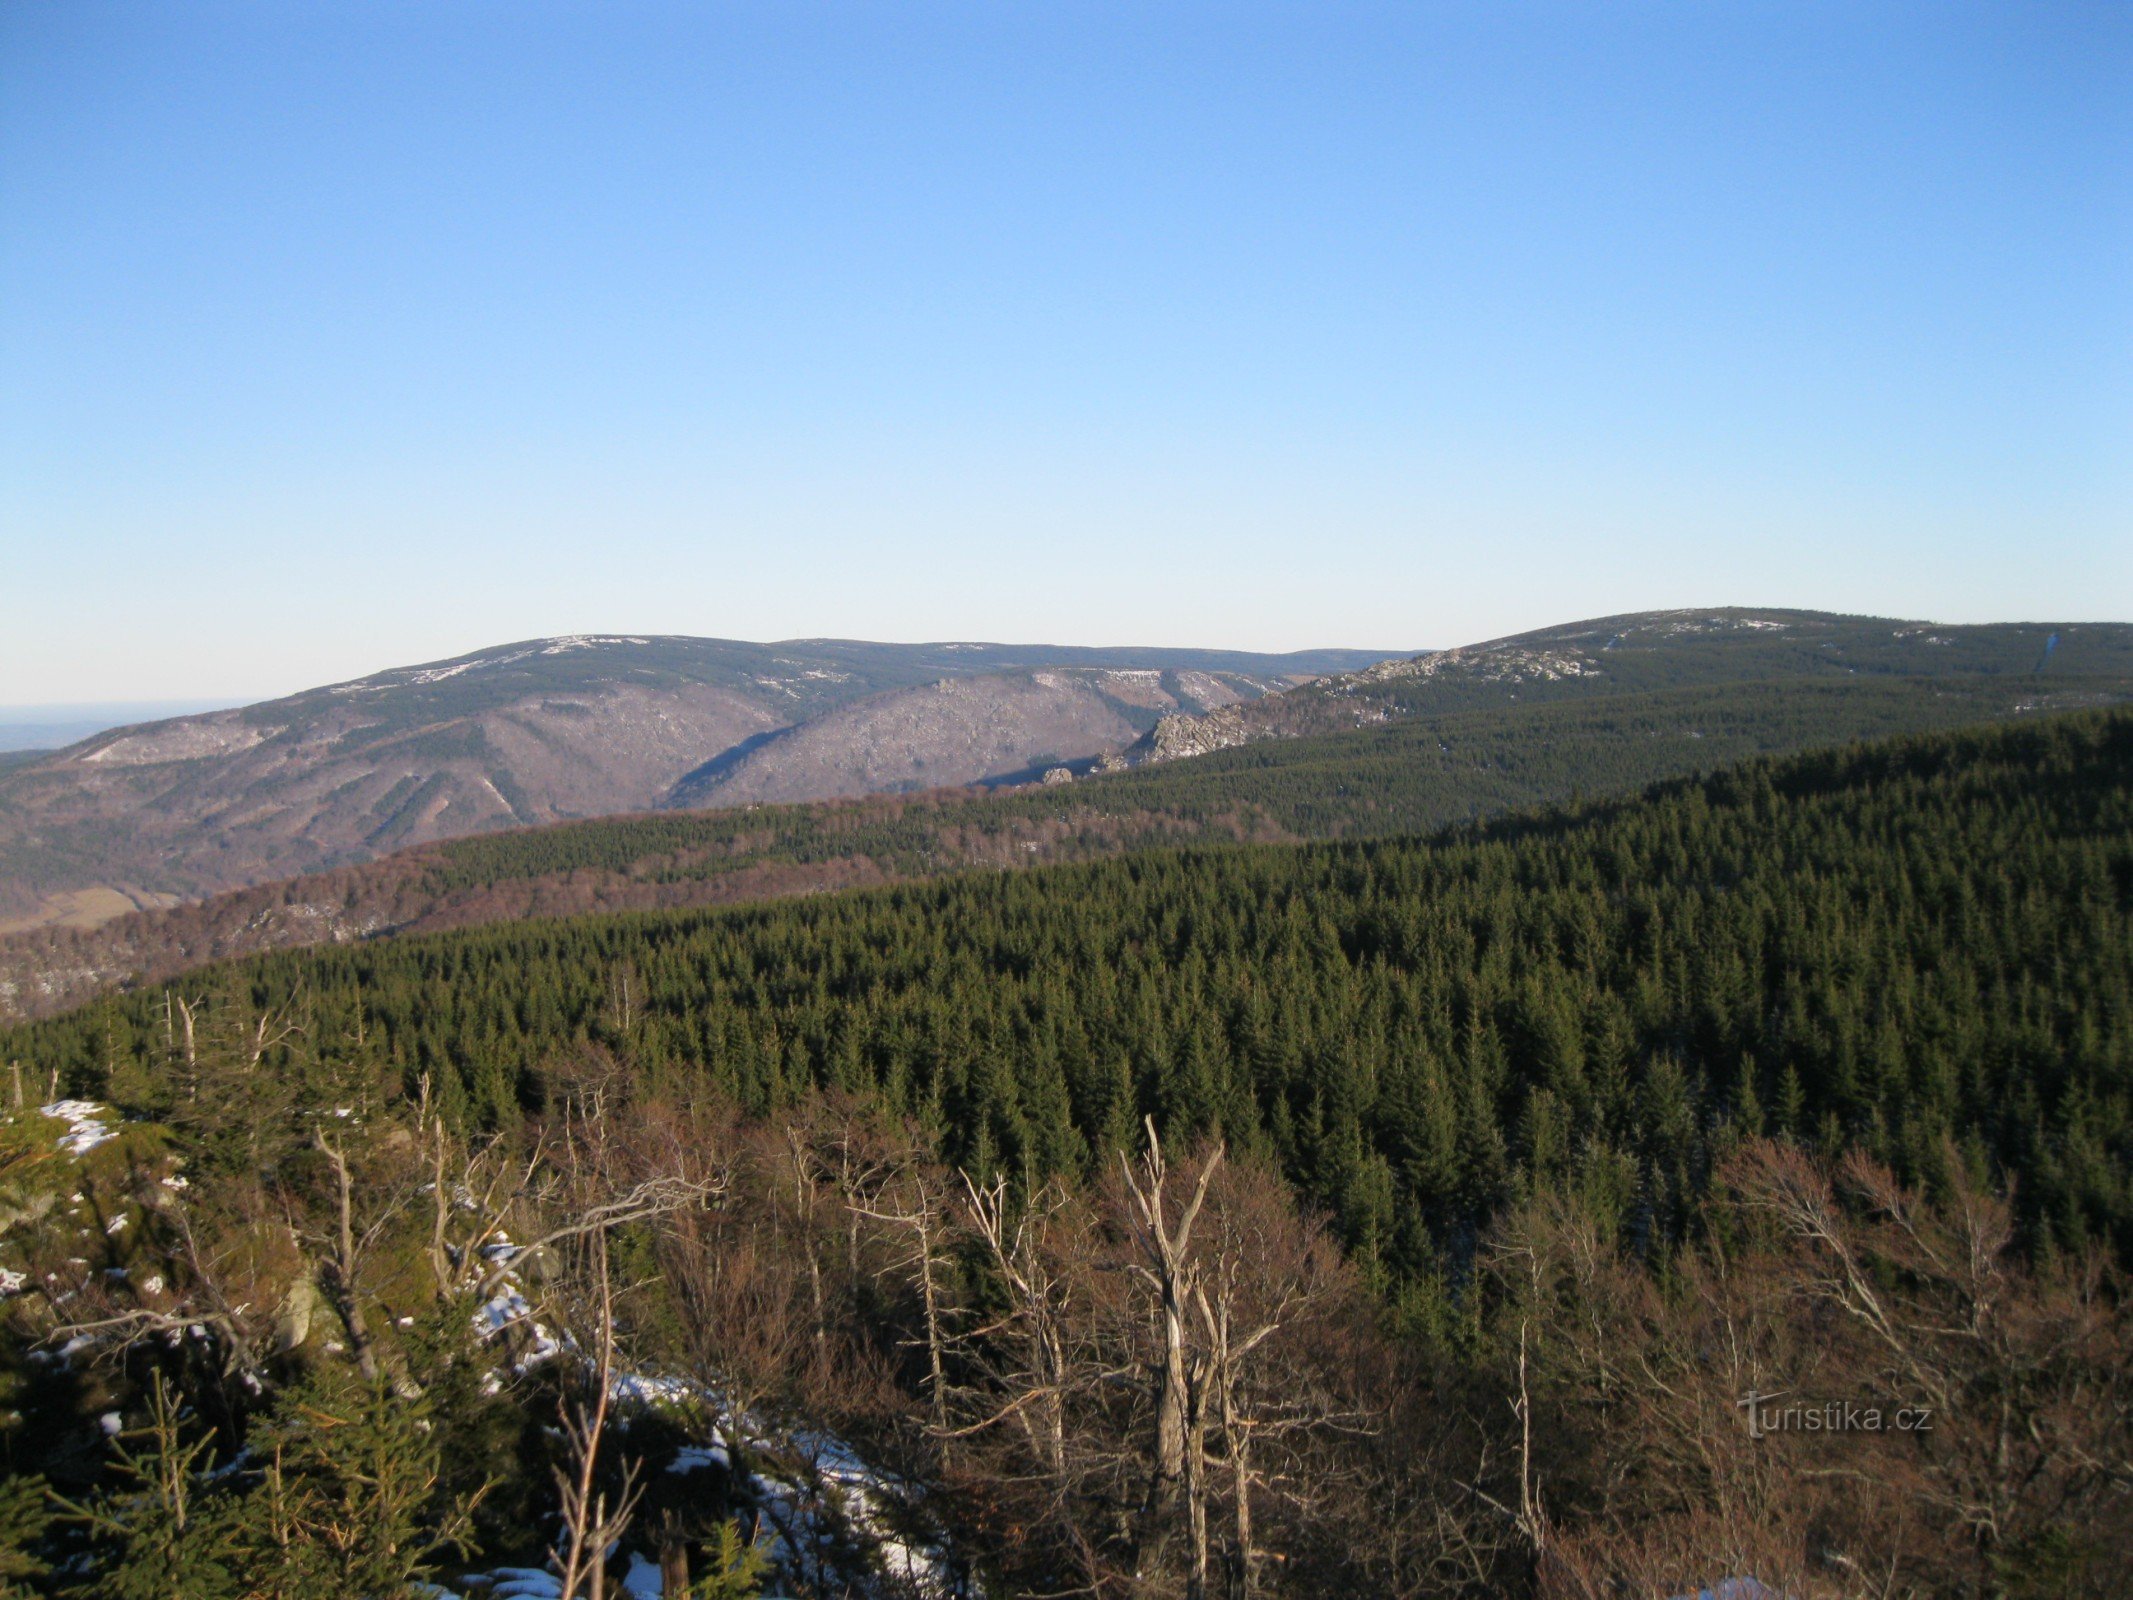 Smrk（伊泽拉山脉捷克部分最高的山峰）的视图。